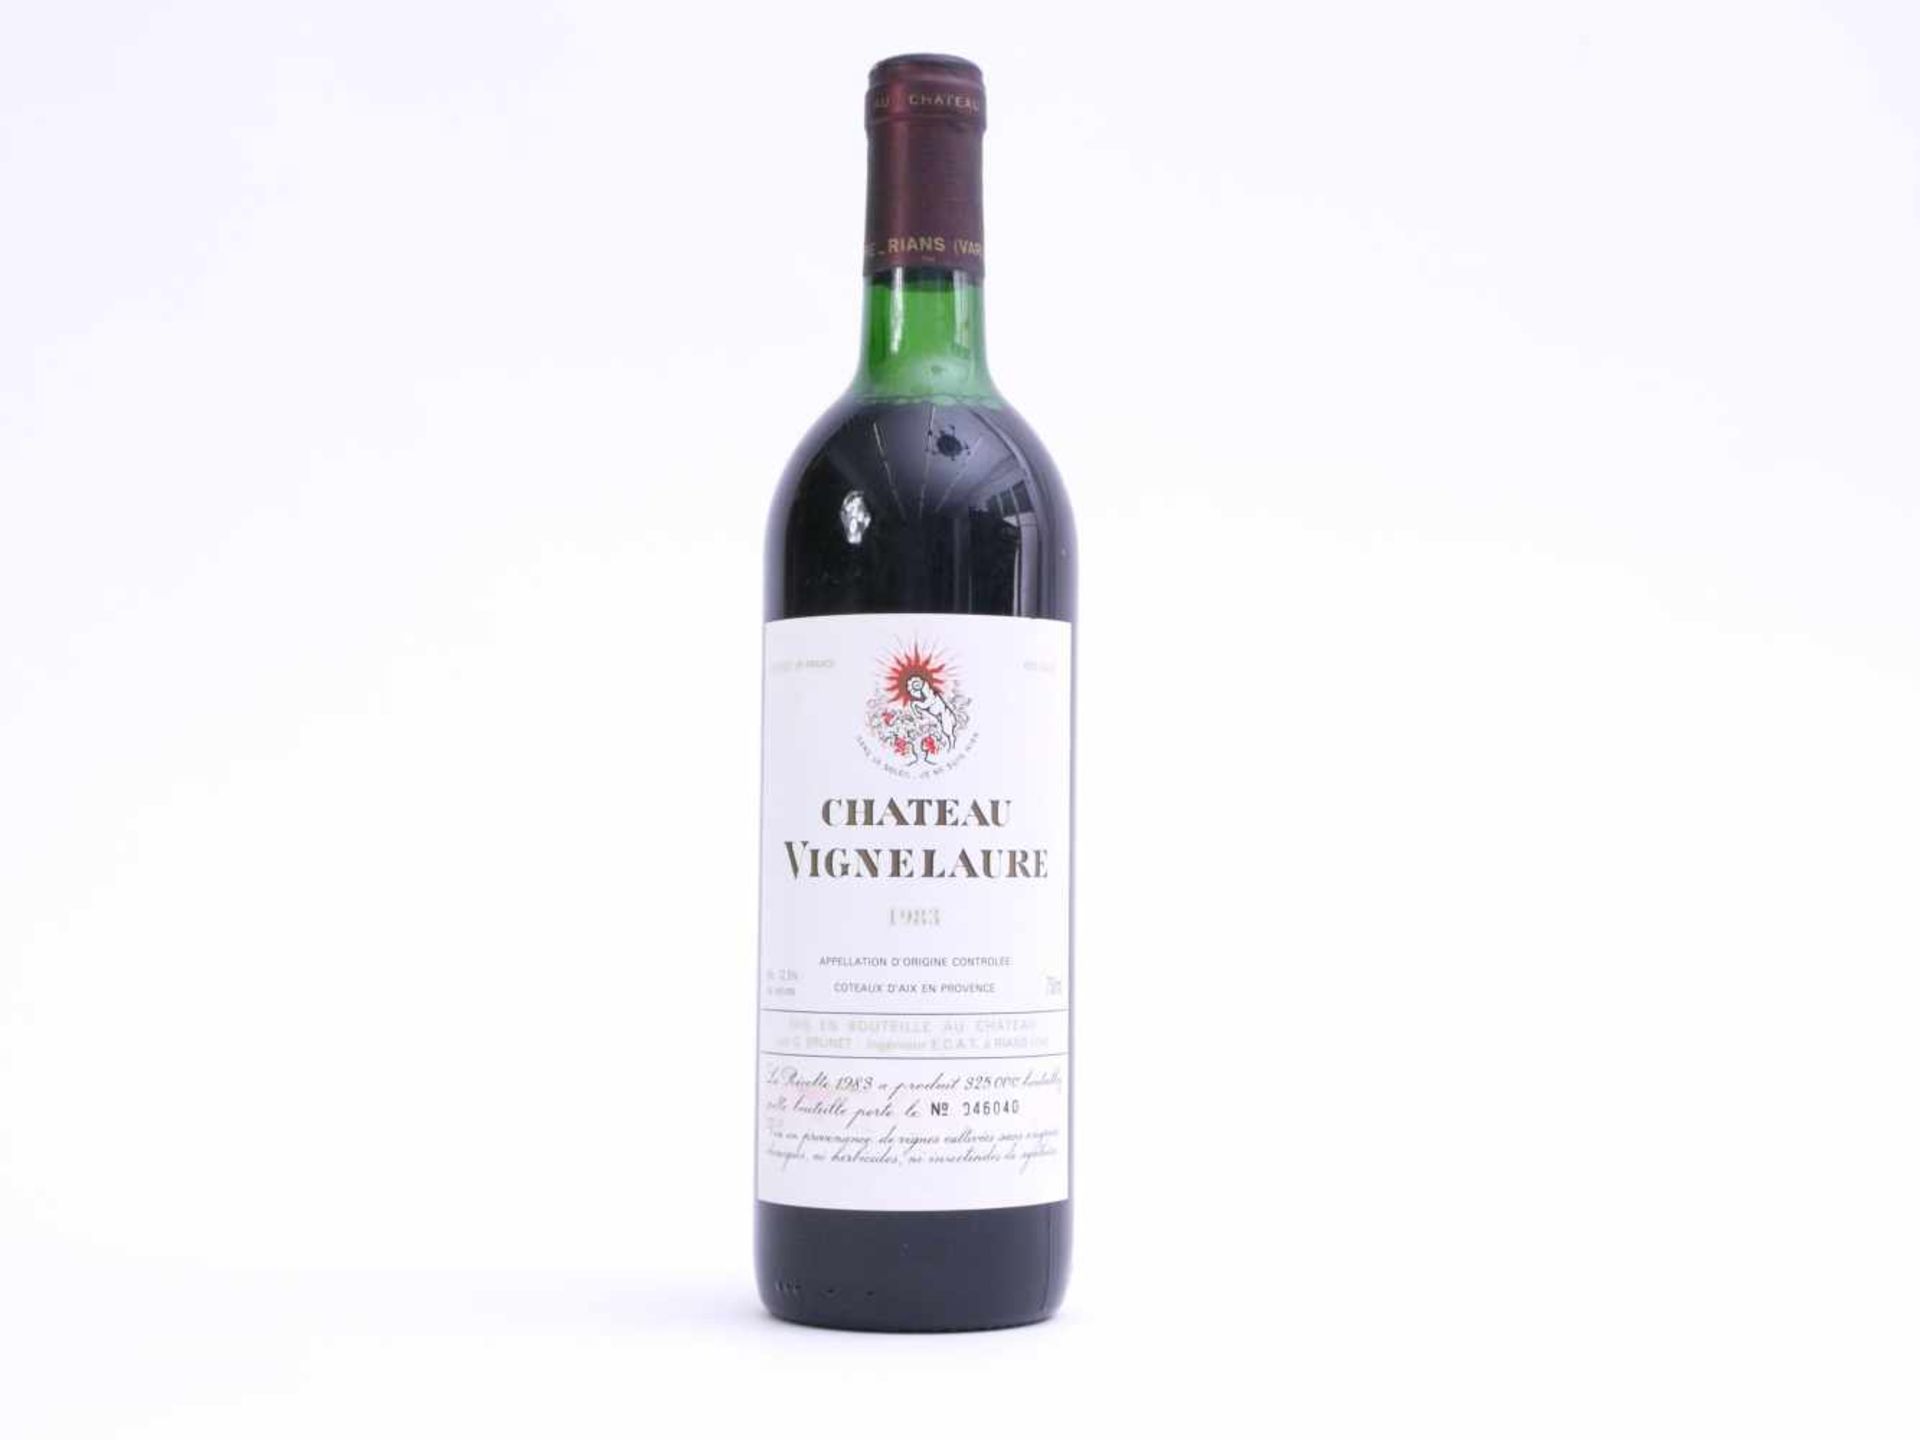 Flasche Rotwein Chateau Vignelaure 1983Nummeriertes Exemplar 046040 von 325000 gesamt abgefüllten